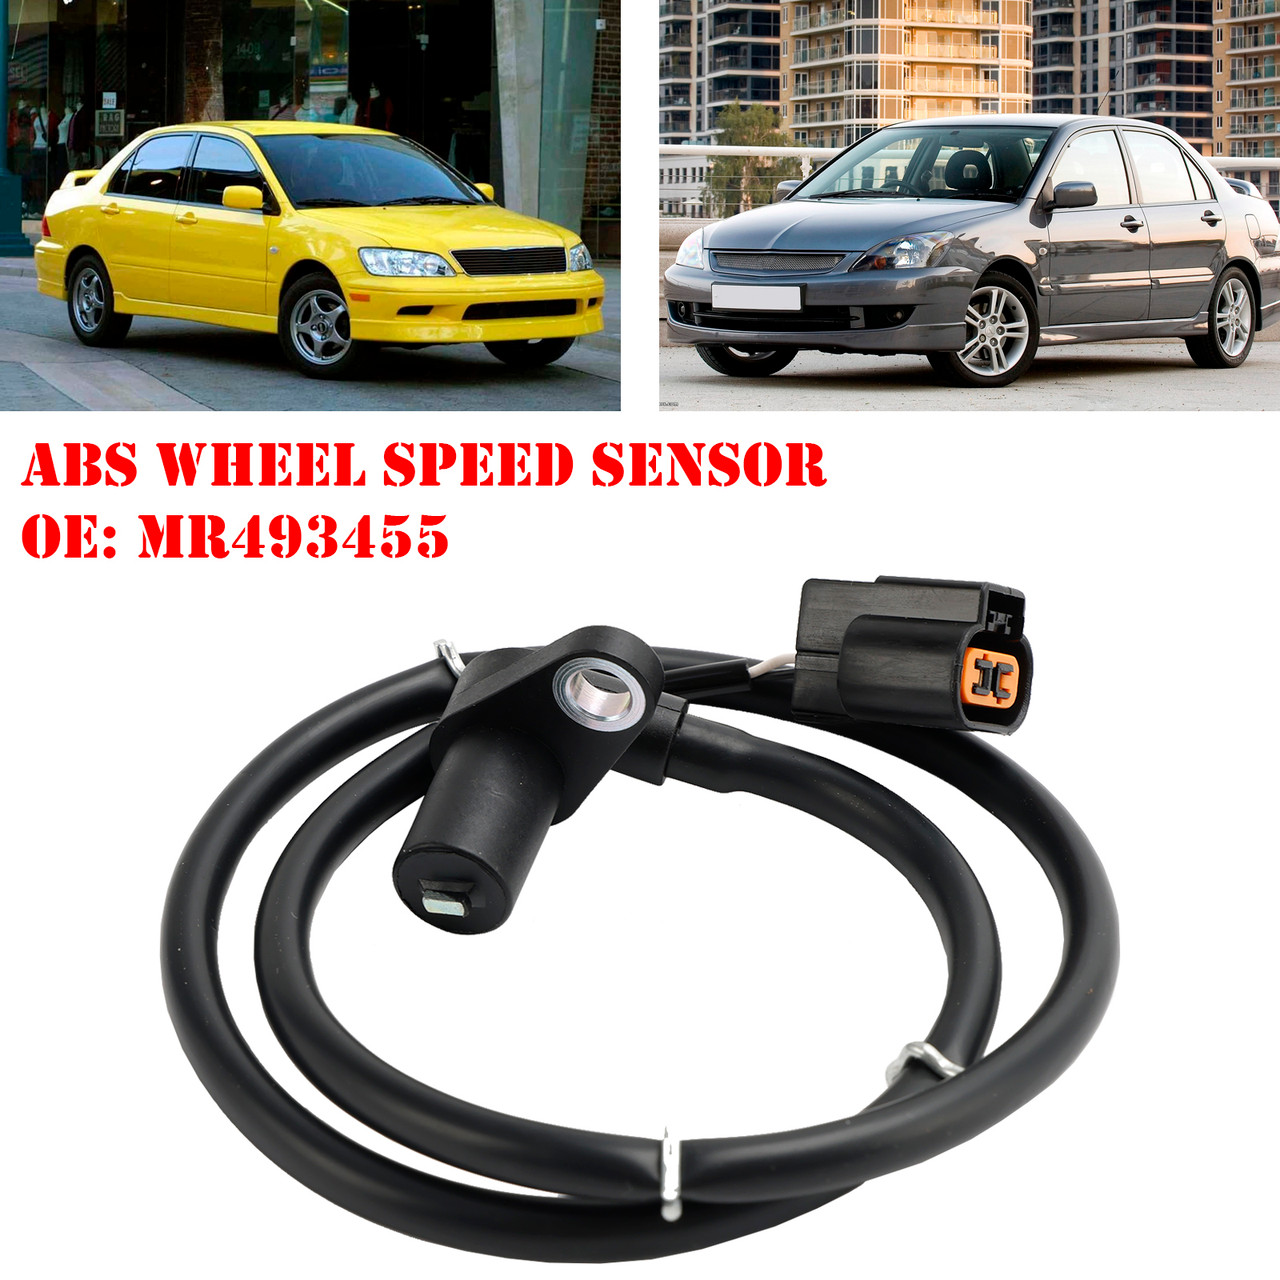 ABS Wheel Speed Sensor Rear Left For Mitsubishi Lancer Evo 2.0 16V MR493455